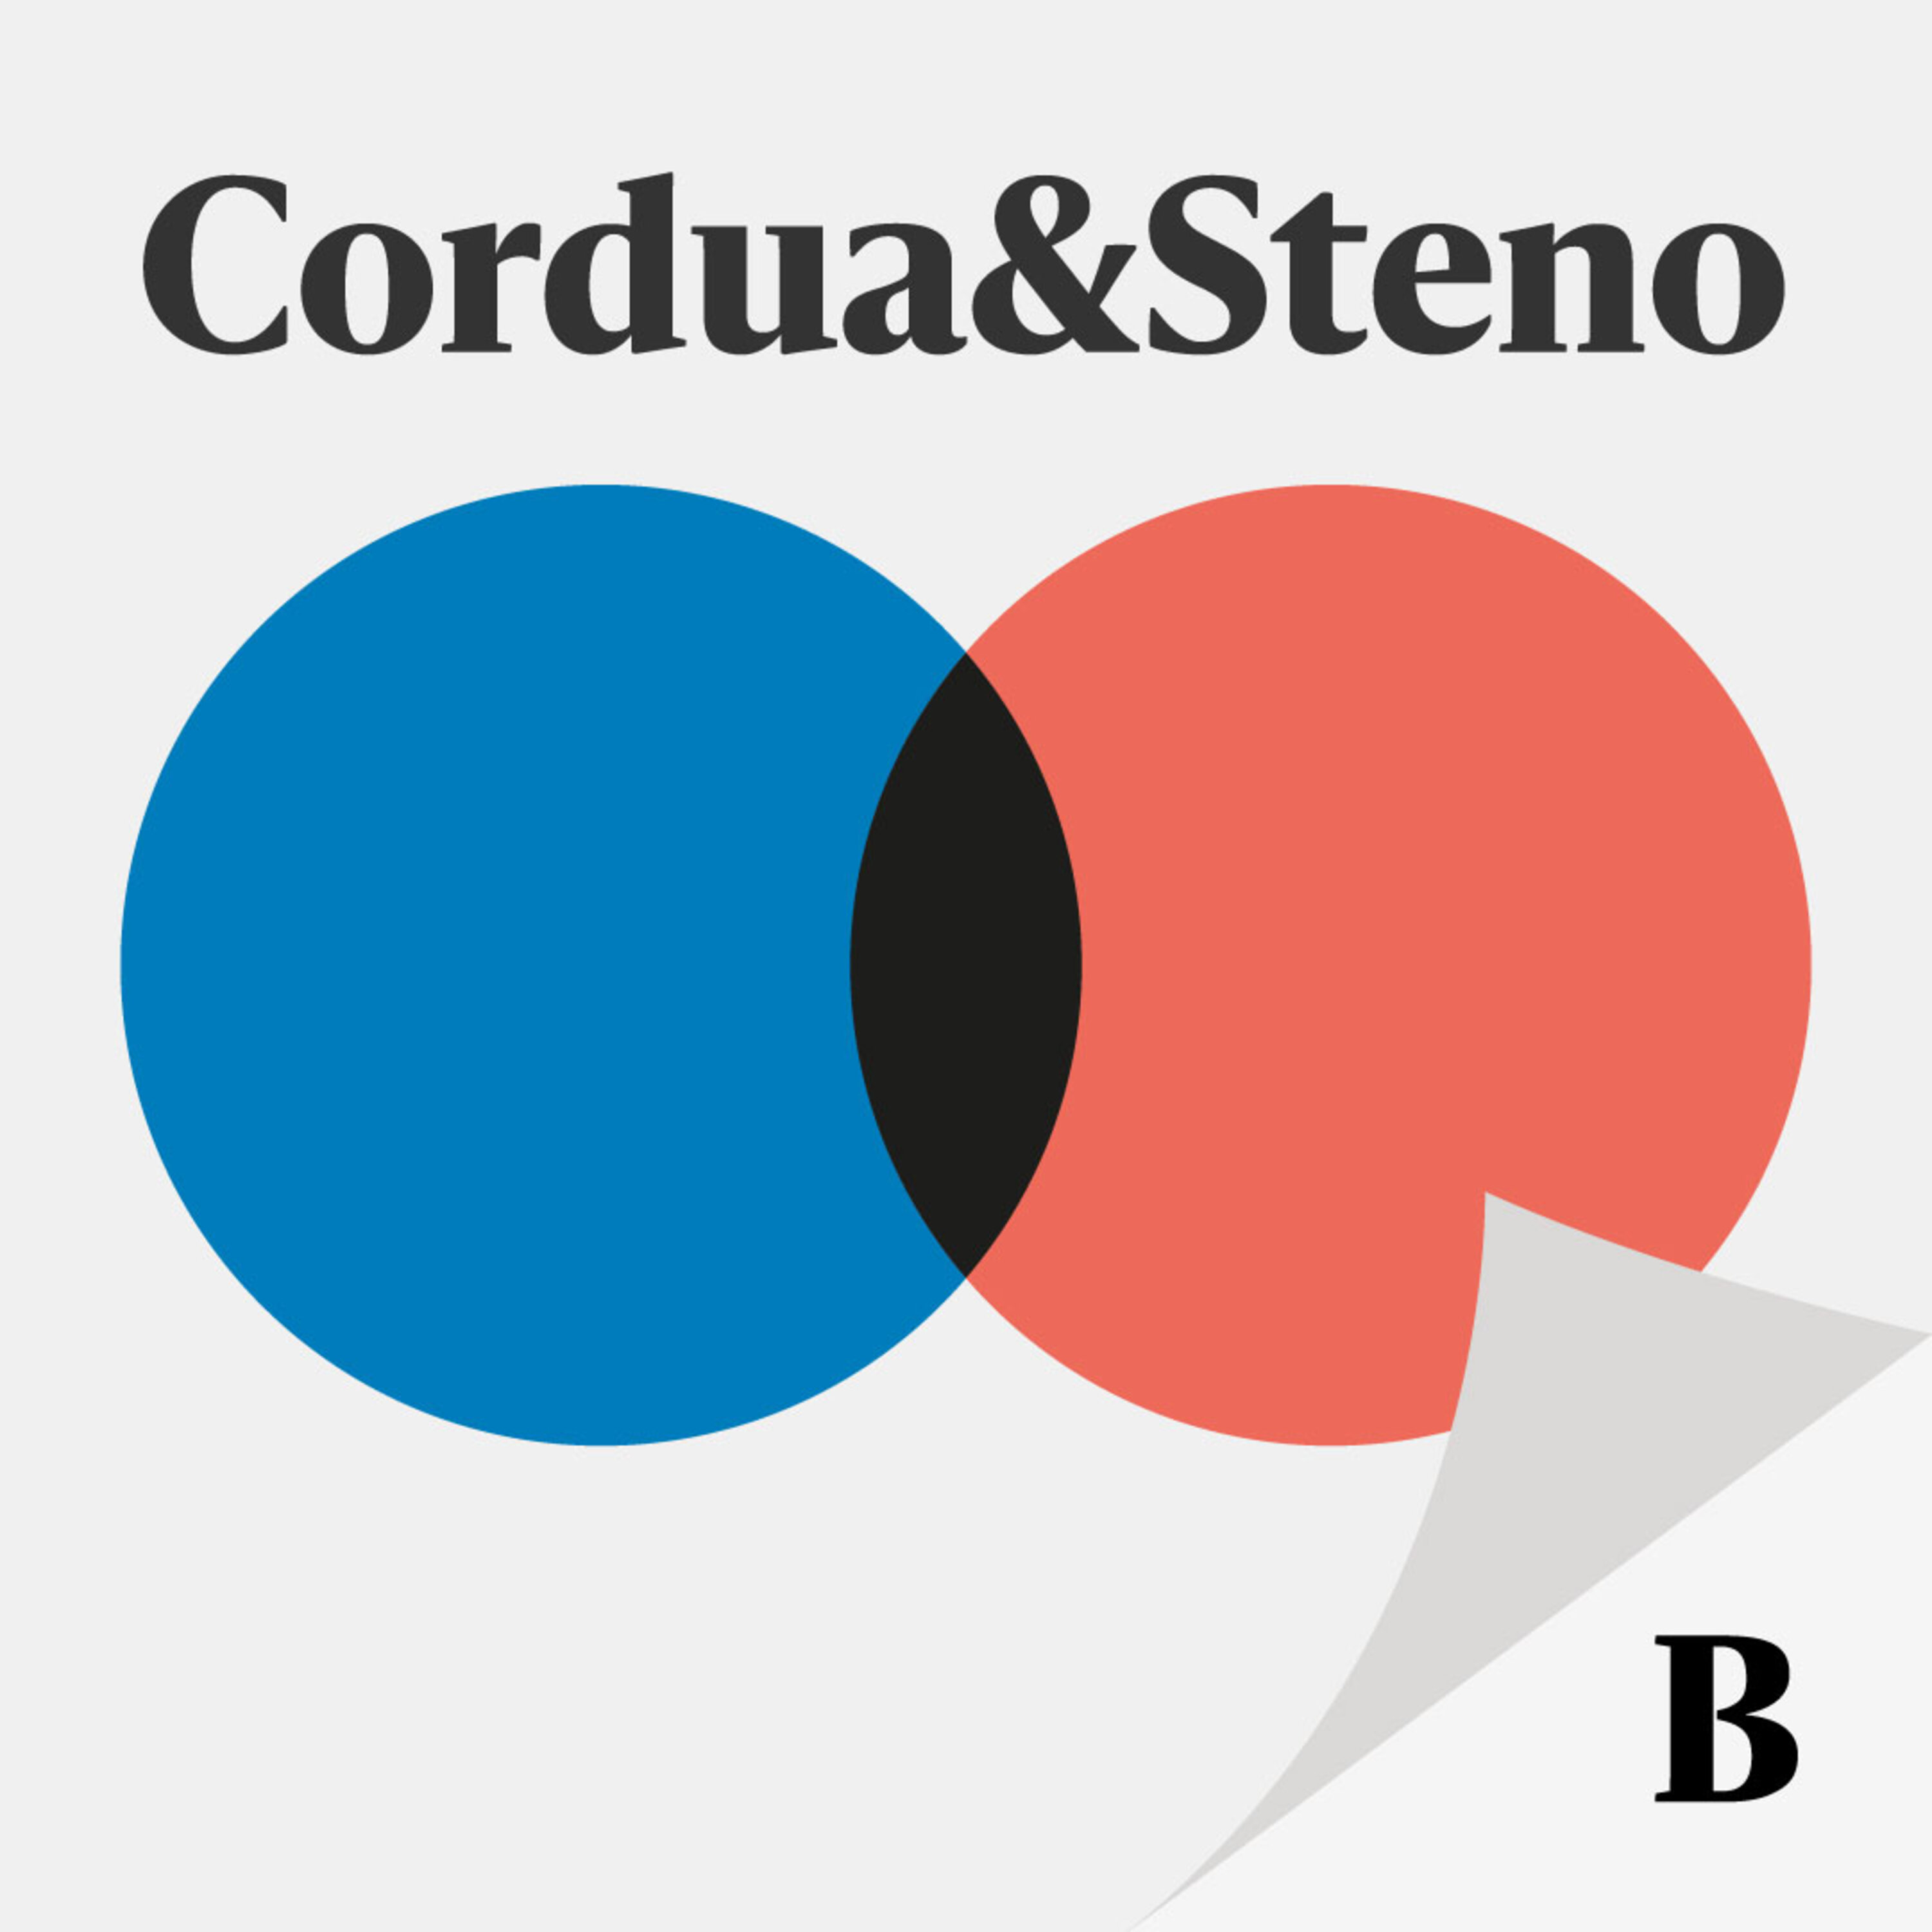 Cordua & Stenos valgspecial: Hvorfor ikke diskutere dansk sikkerhedspolitik i valgkampen?